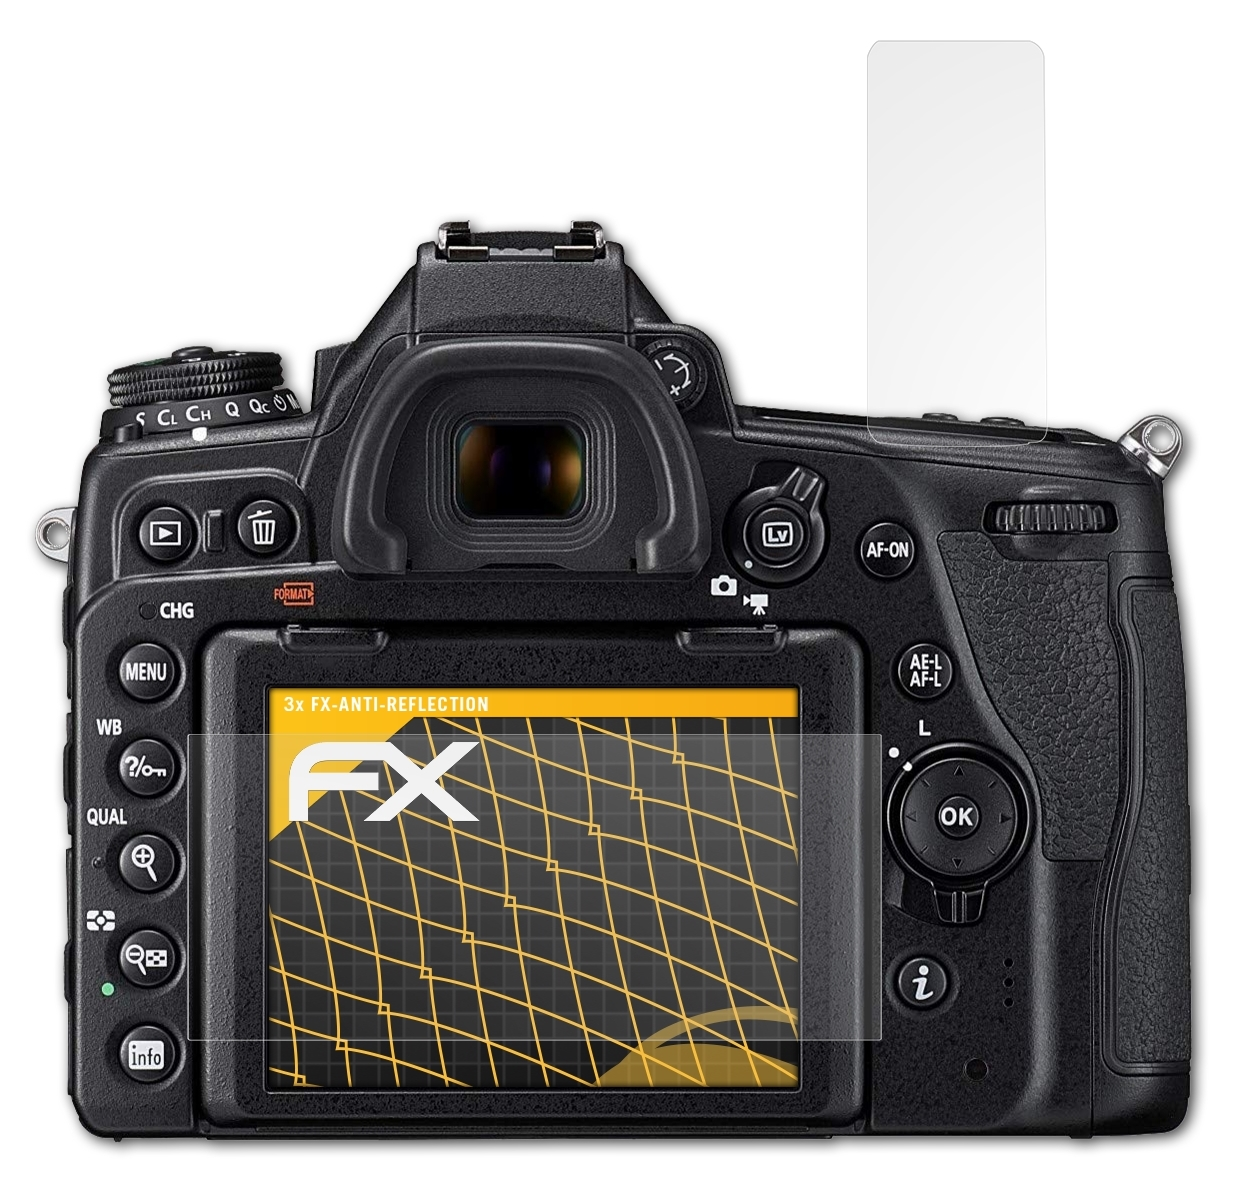 ATFOLIX 3x FX-Antireflex Nikon D780) Displayschutz(für